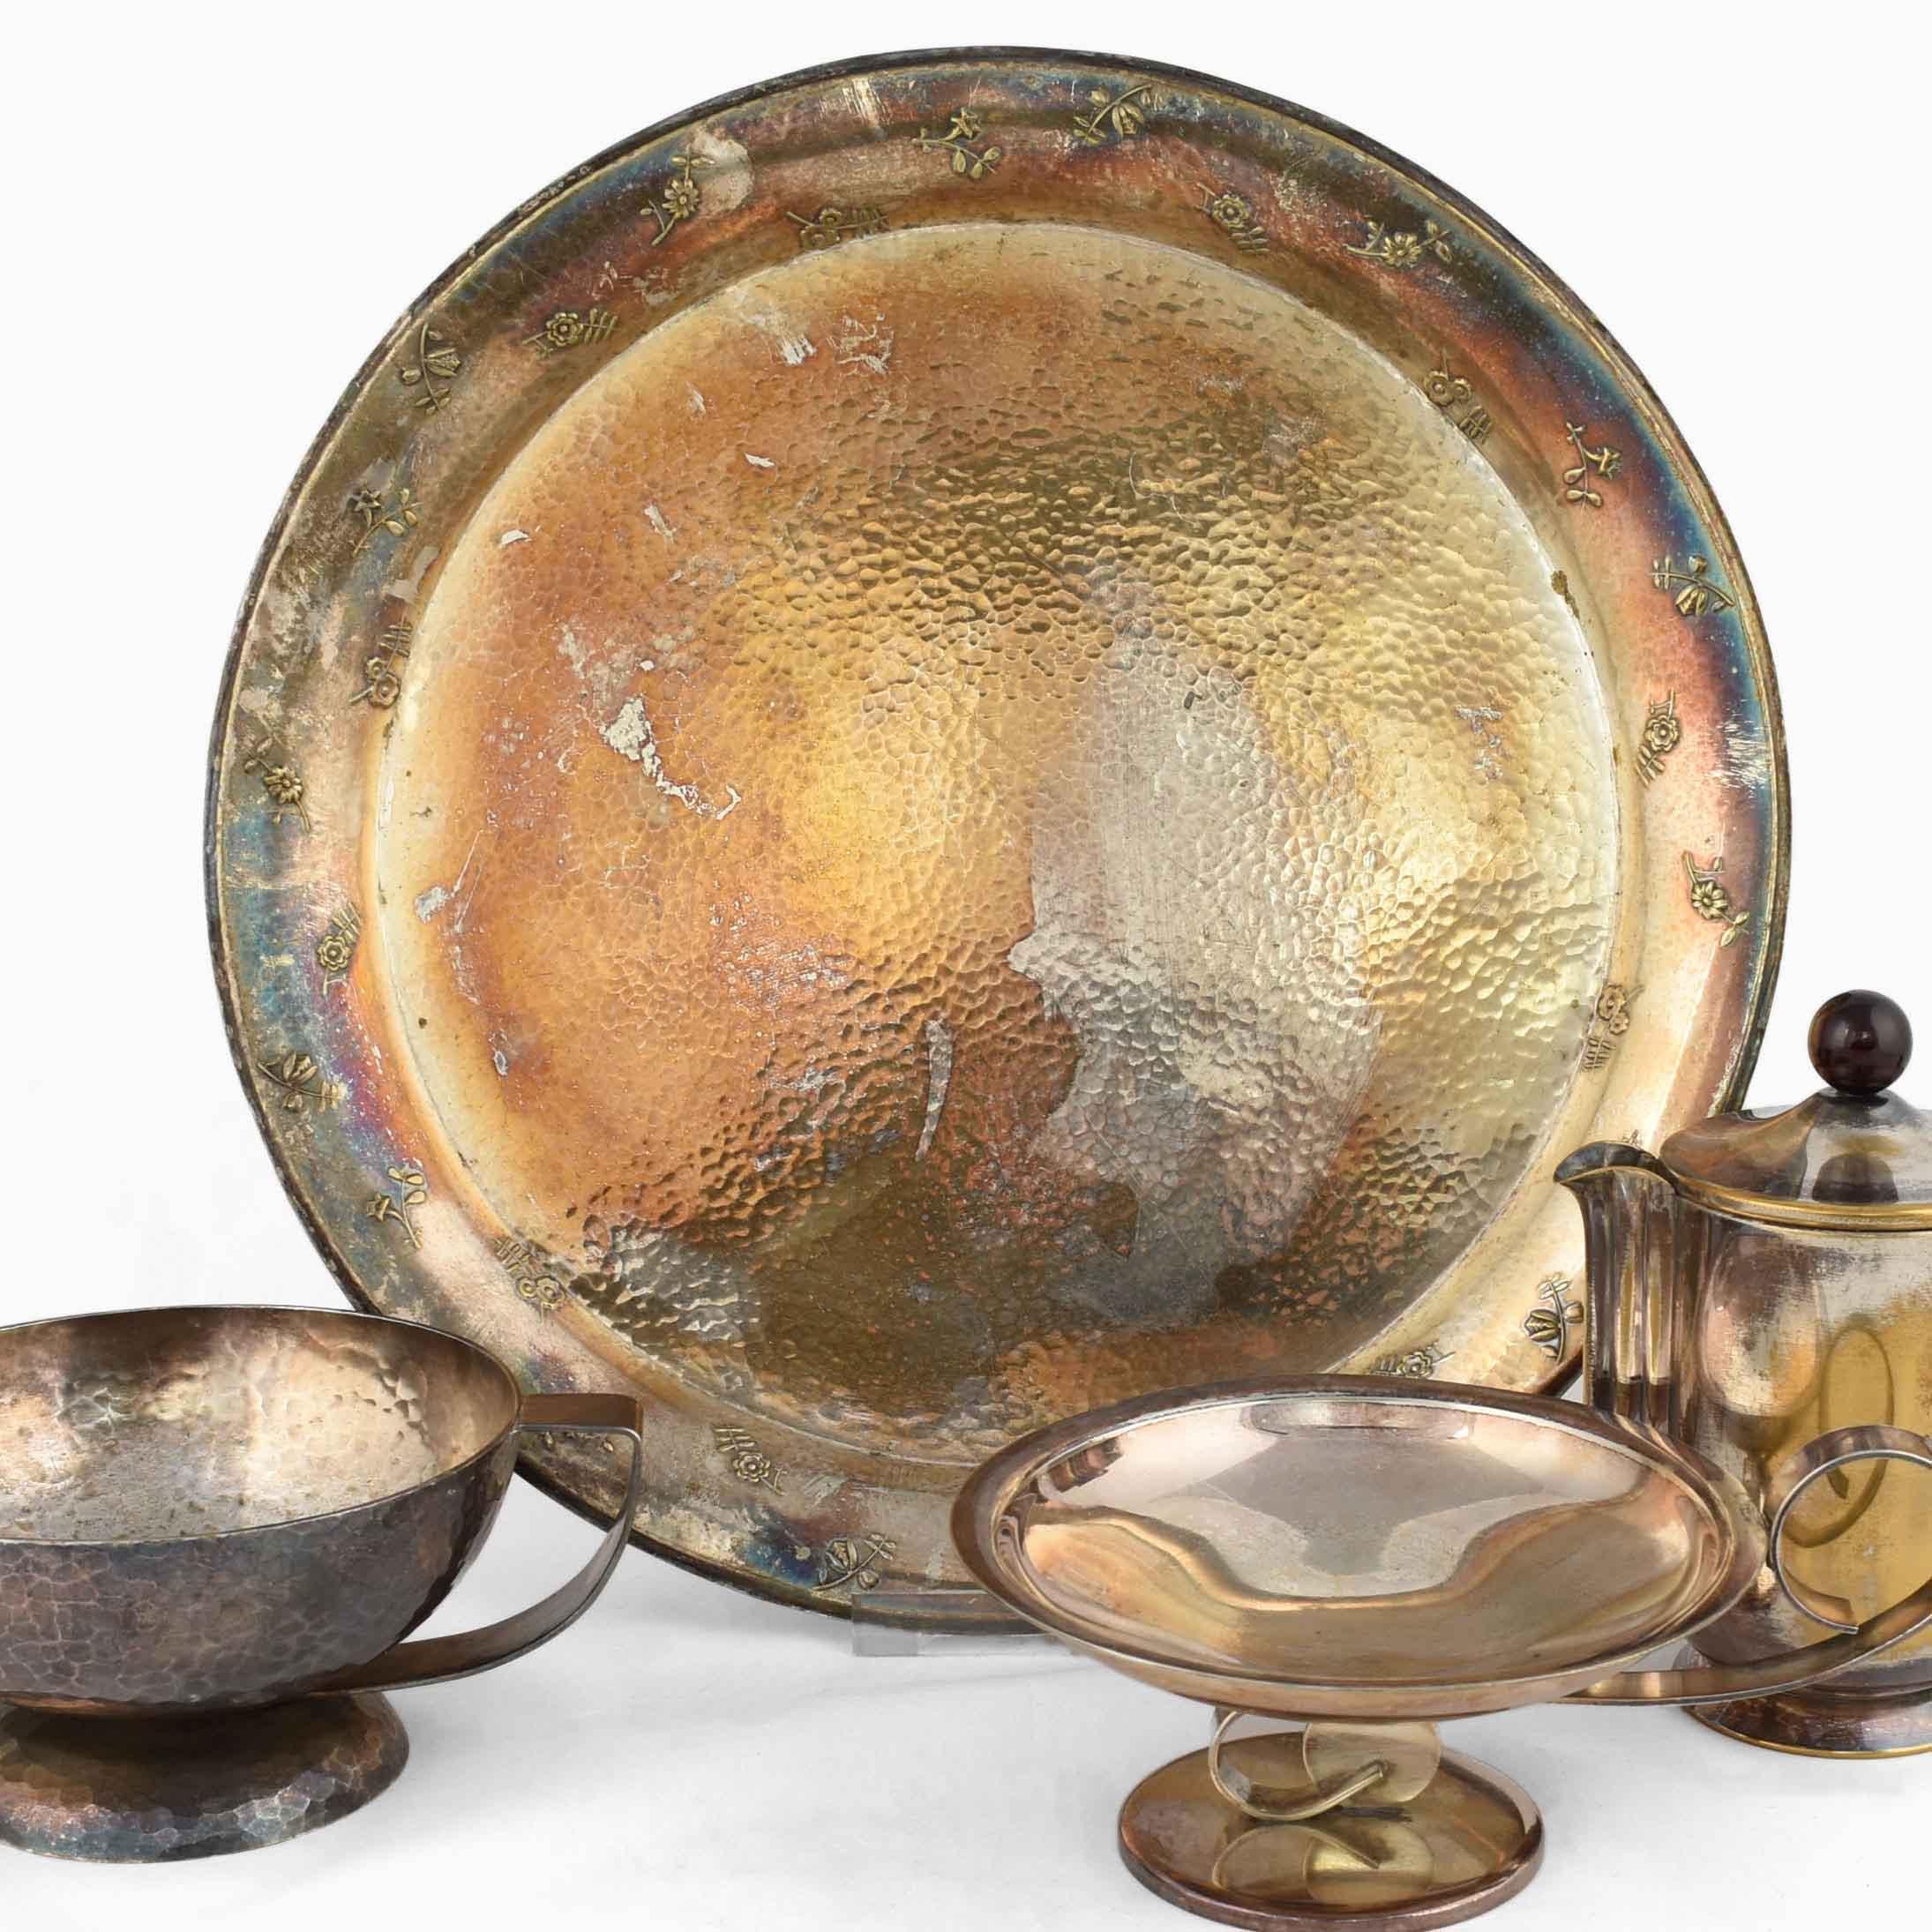 Le lot d'argenterie mixte est un ensemble original d'objets décoratifs Art Déco réalisés par divers artistes dans les années 1920. 

Le groupe comprend quatre pièces : un bol à anse de Georg Nilsson (H. 7 cm), un bol plus petit (H. 6,5 cm), un